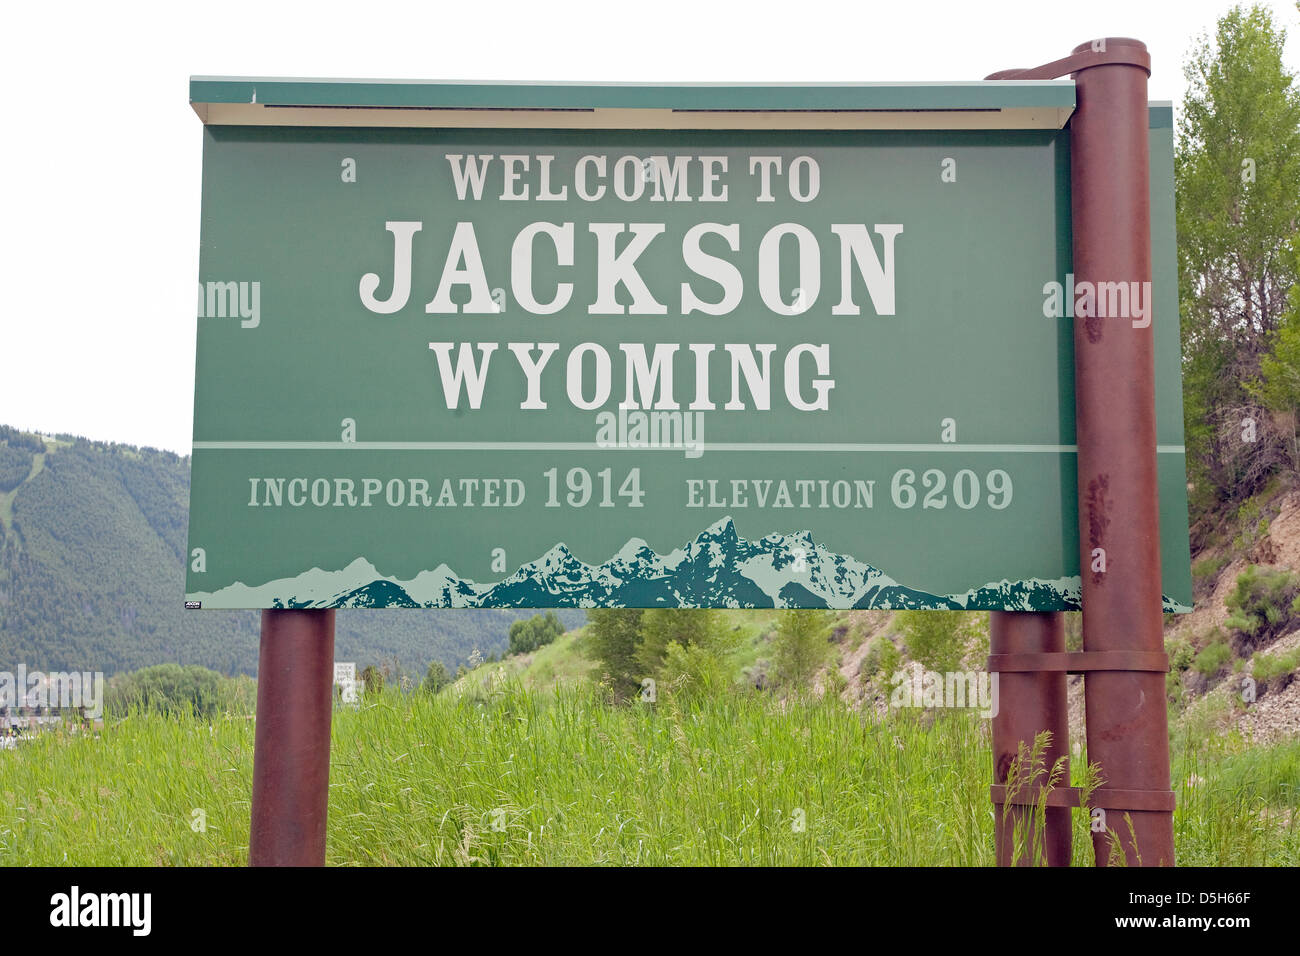 Willkommen Sie bei Jackson Wyoming Straßenschild Stockfoto